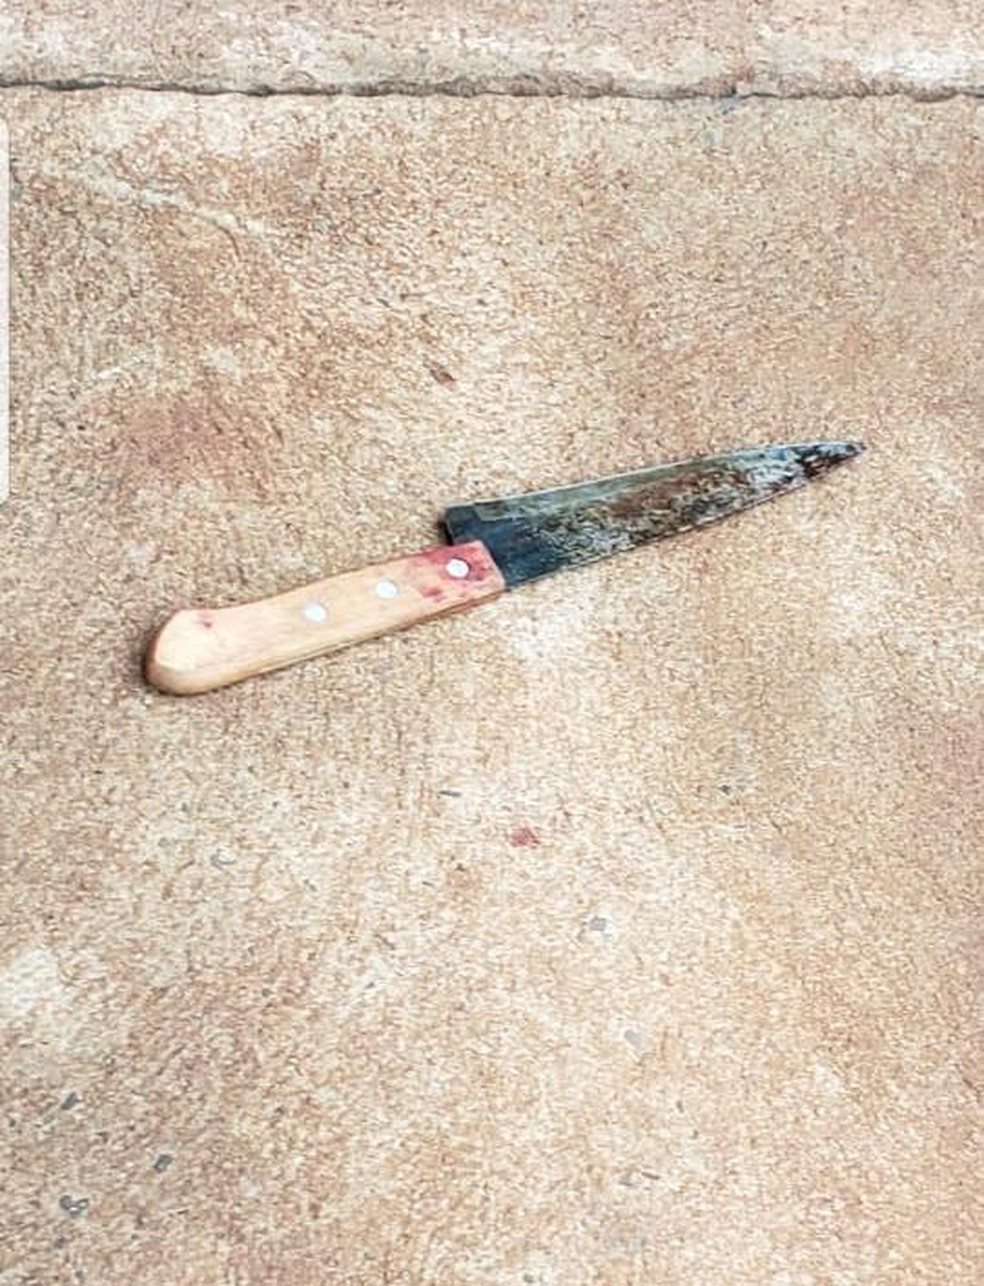 Faca que mulher usou para matar amiga, em Paranaíba (MS). — Foto: Polícia Civil/Dvulgação